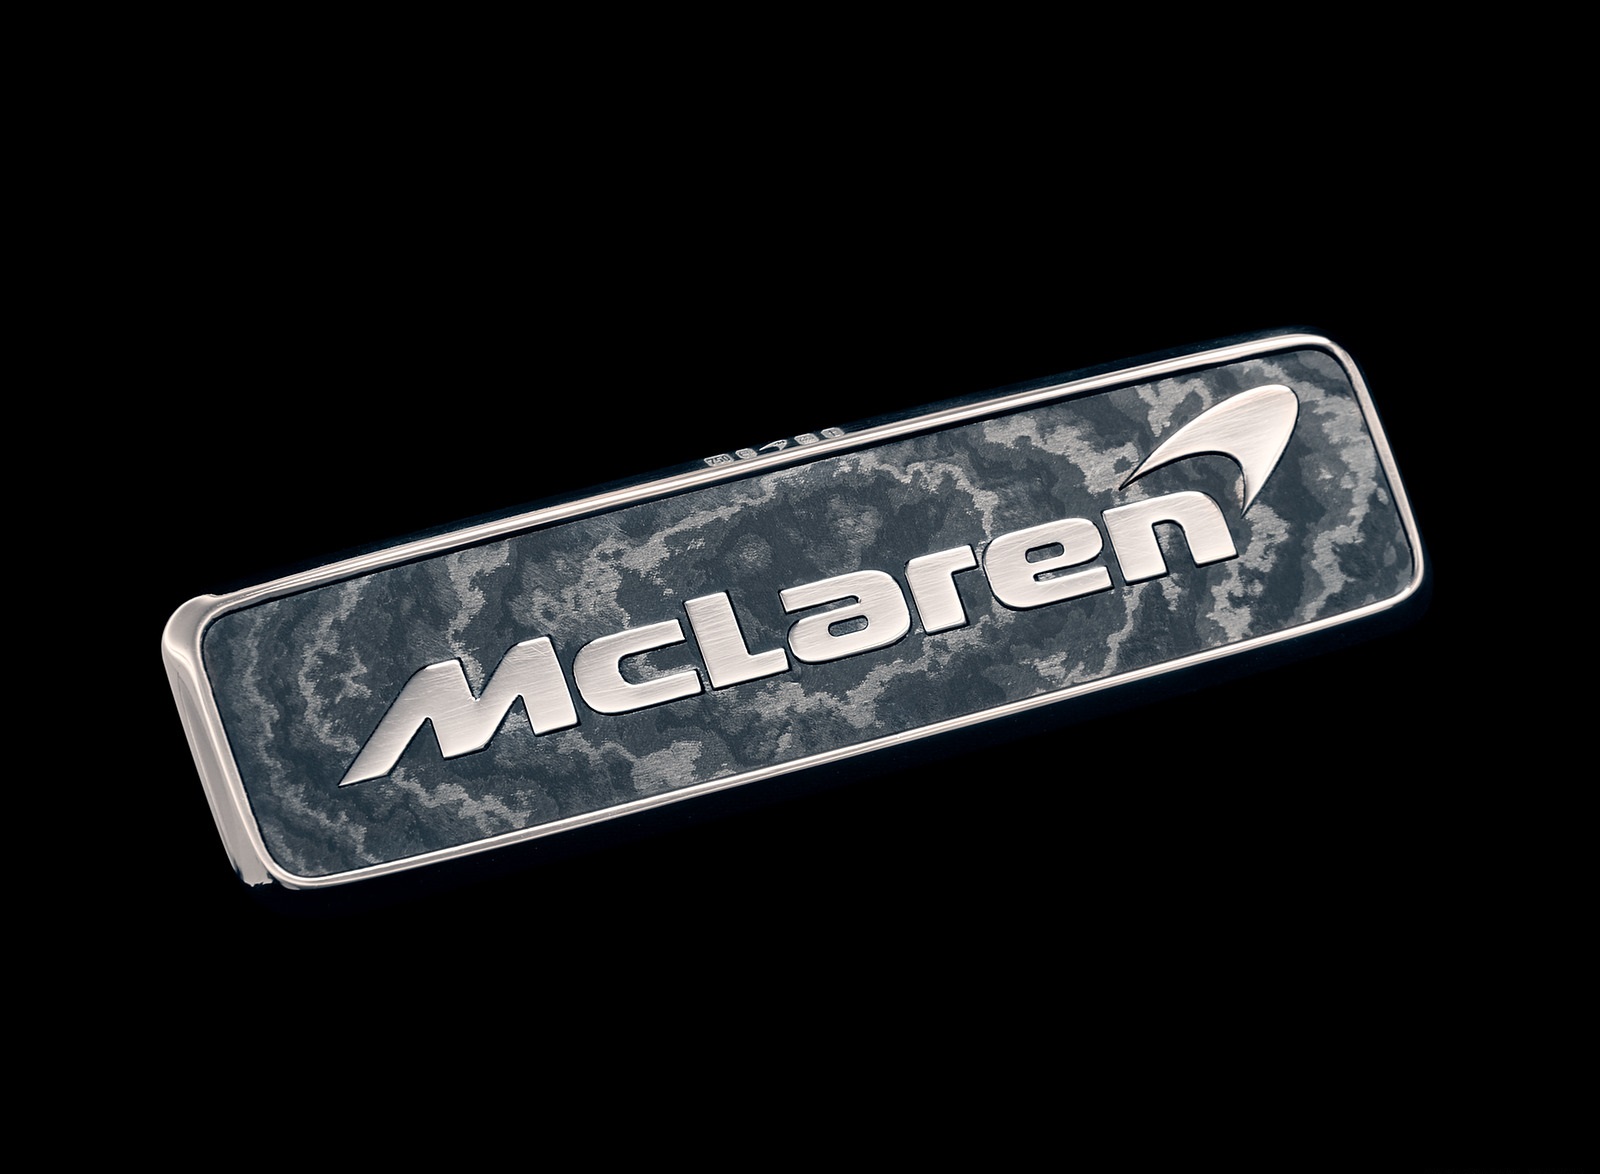 2019 McLaren Speedtail Badge Wallpapers #27 of 39